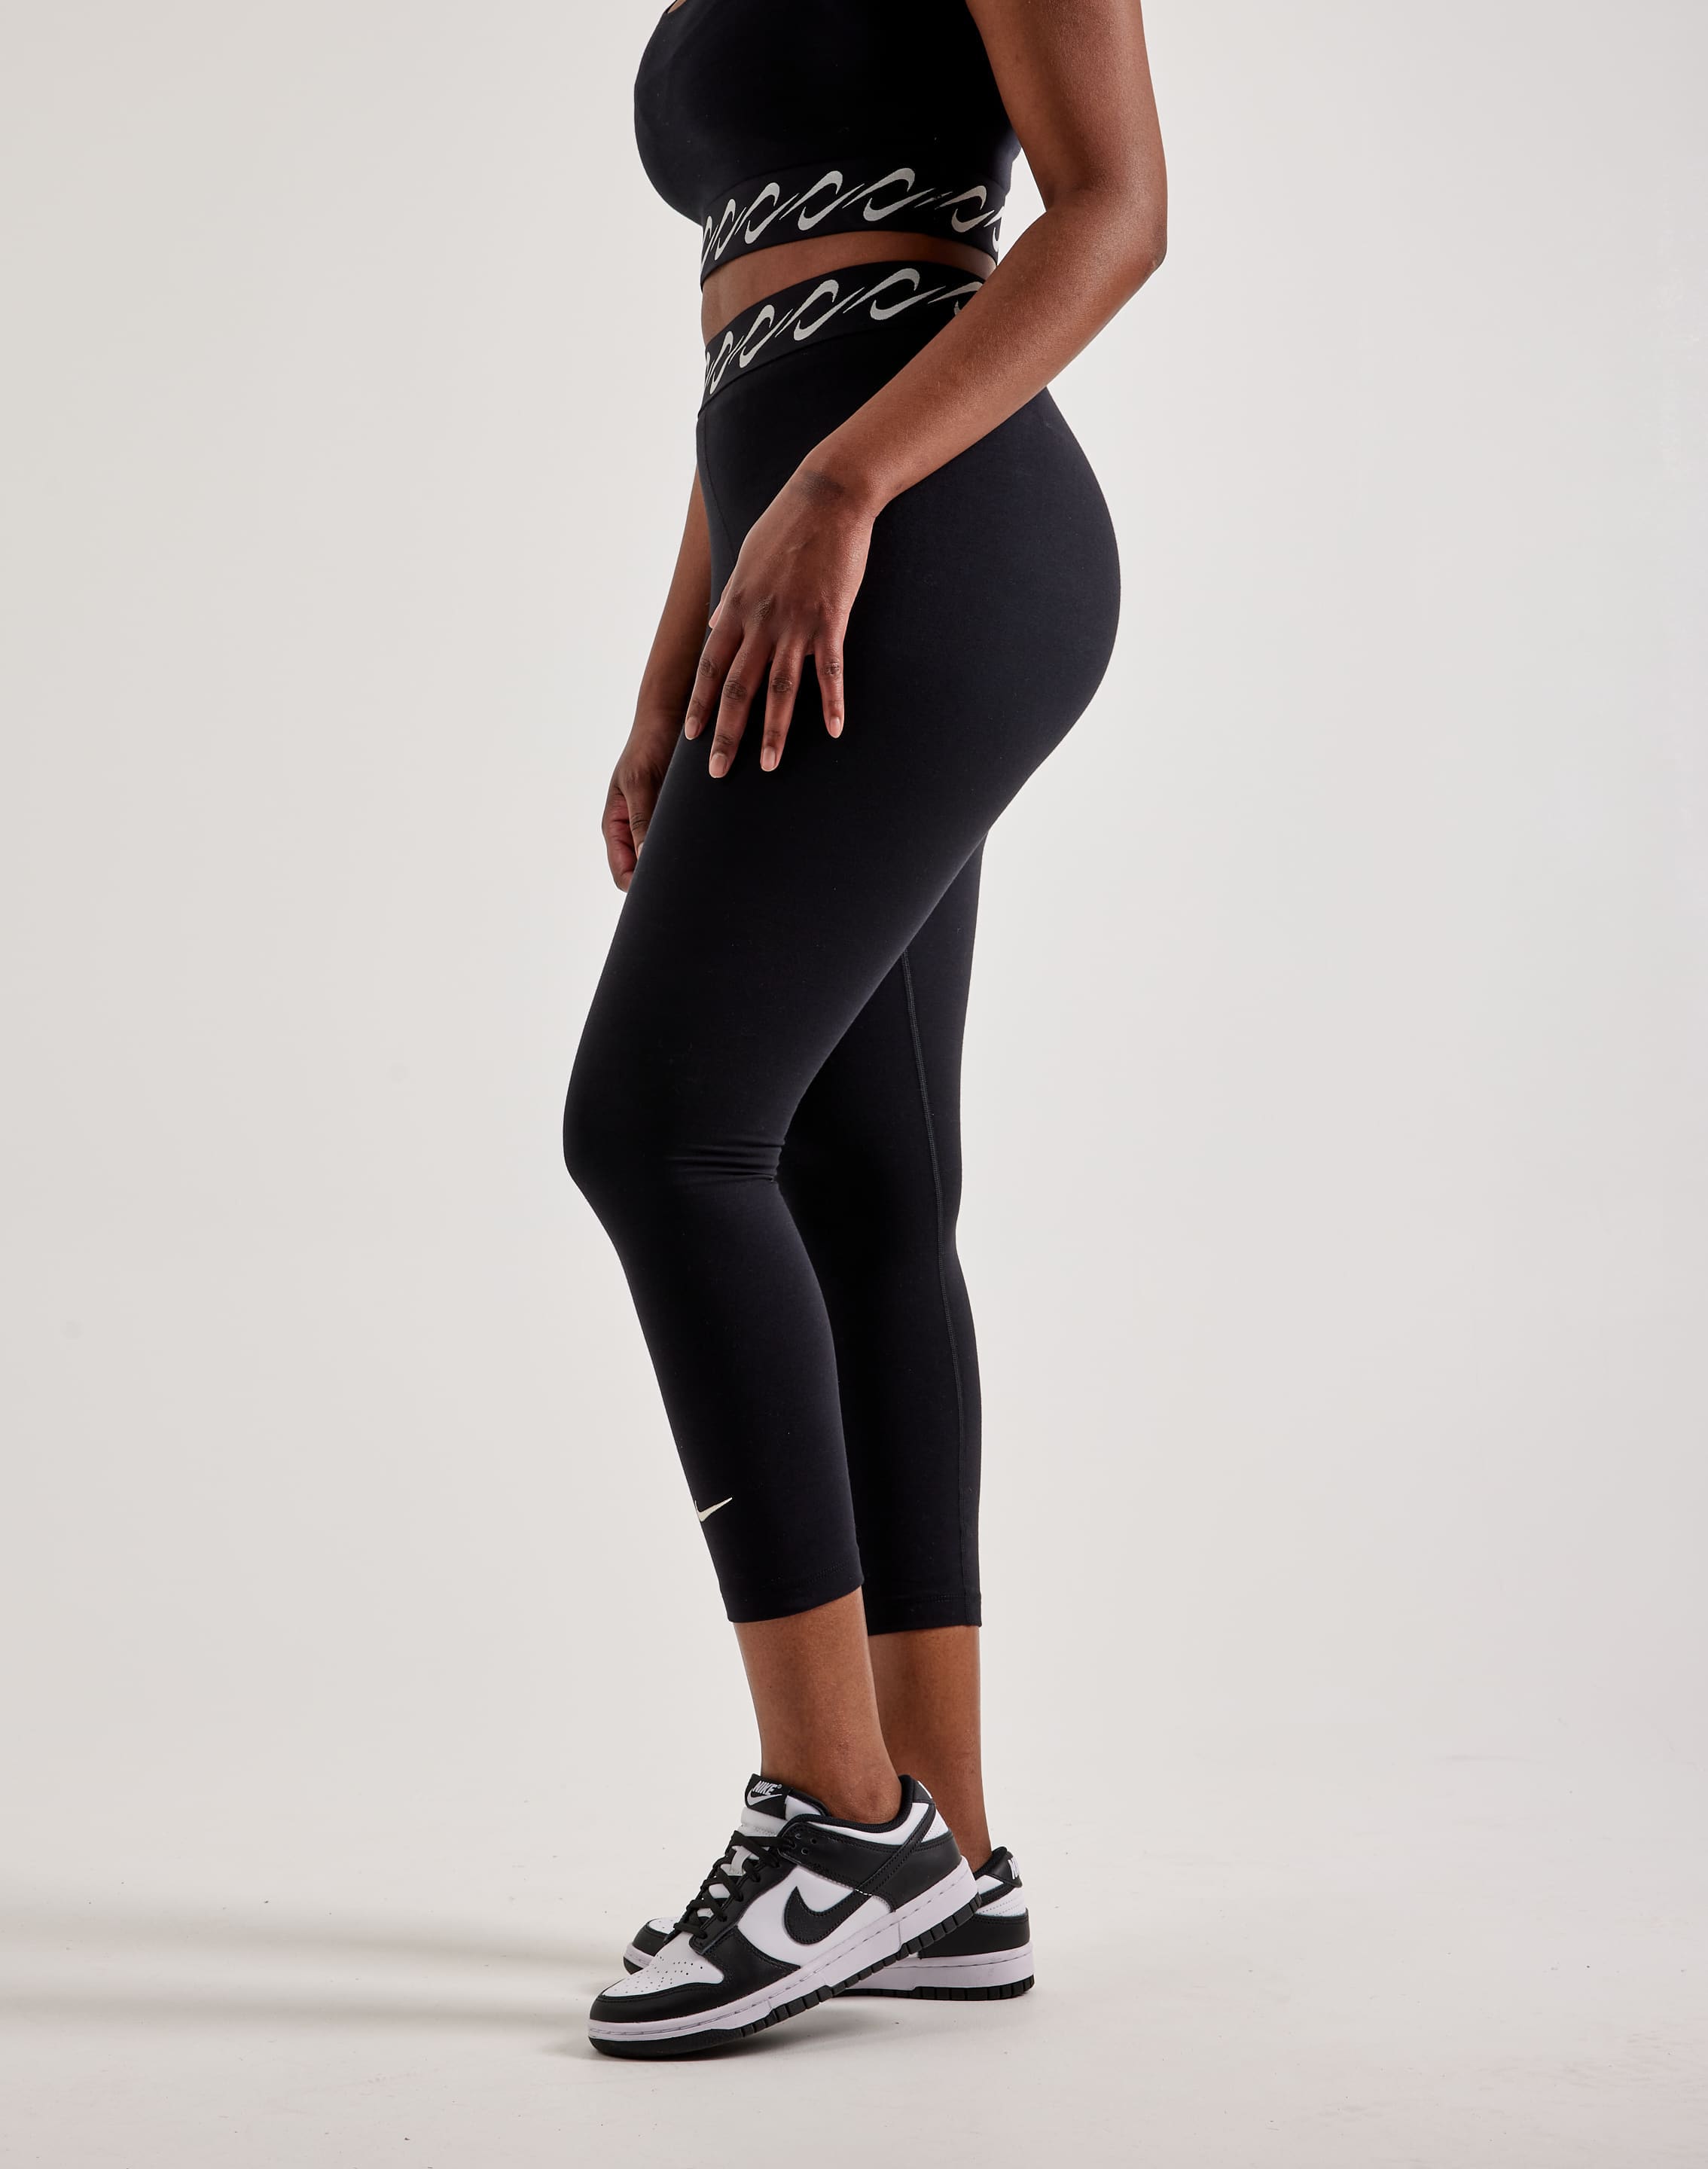 Nike Yoga Women's High-Waisted 7/8 Leggings. Nike IN